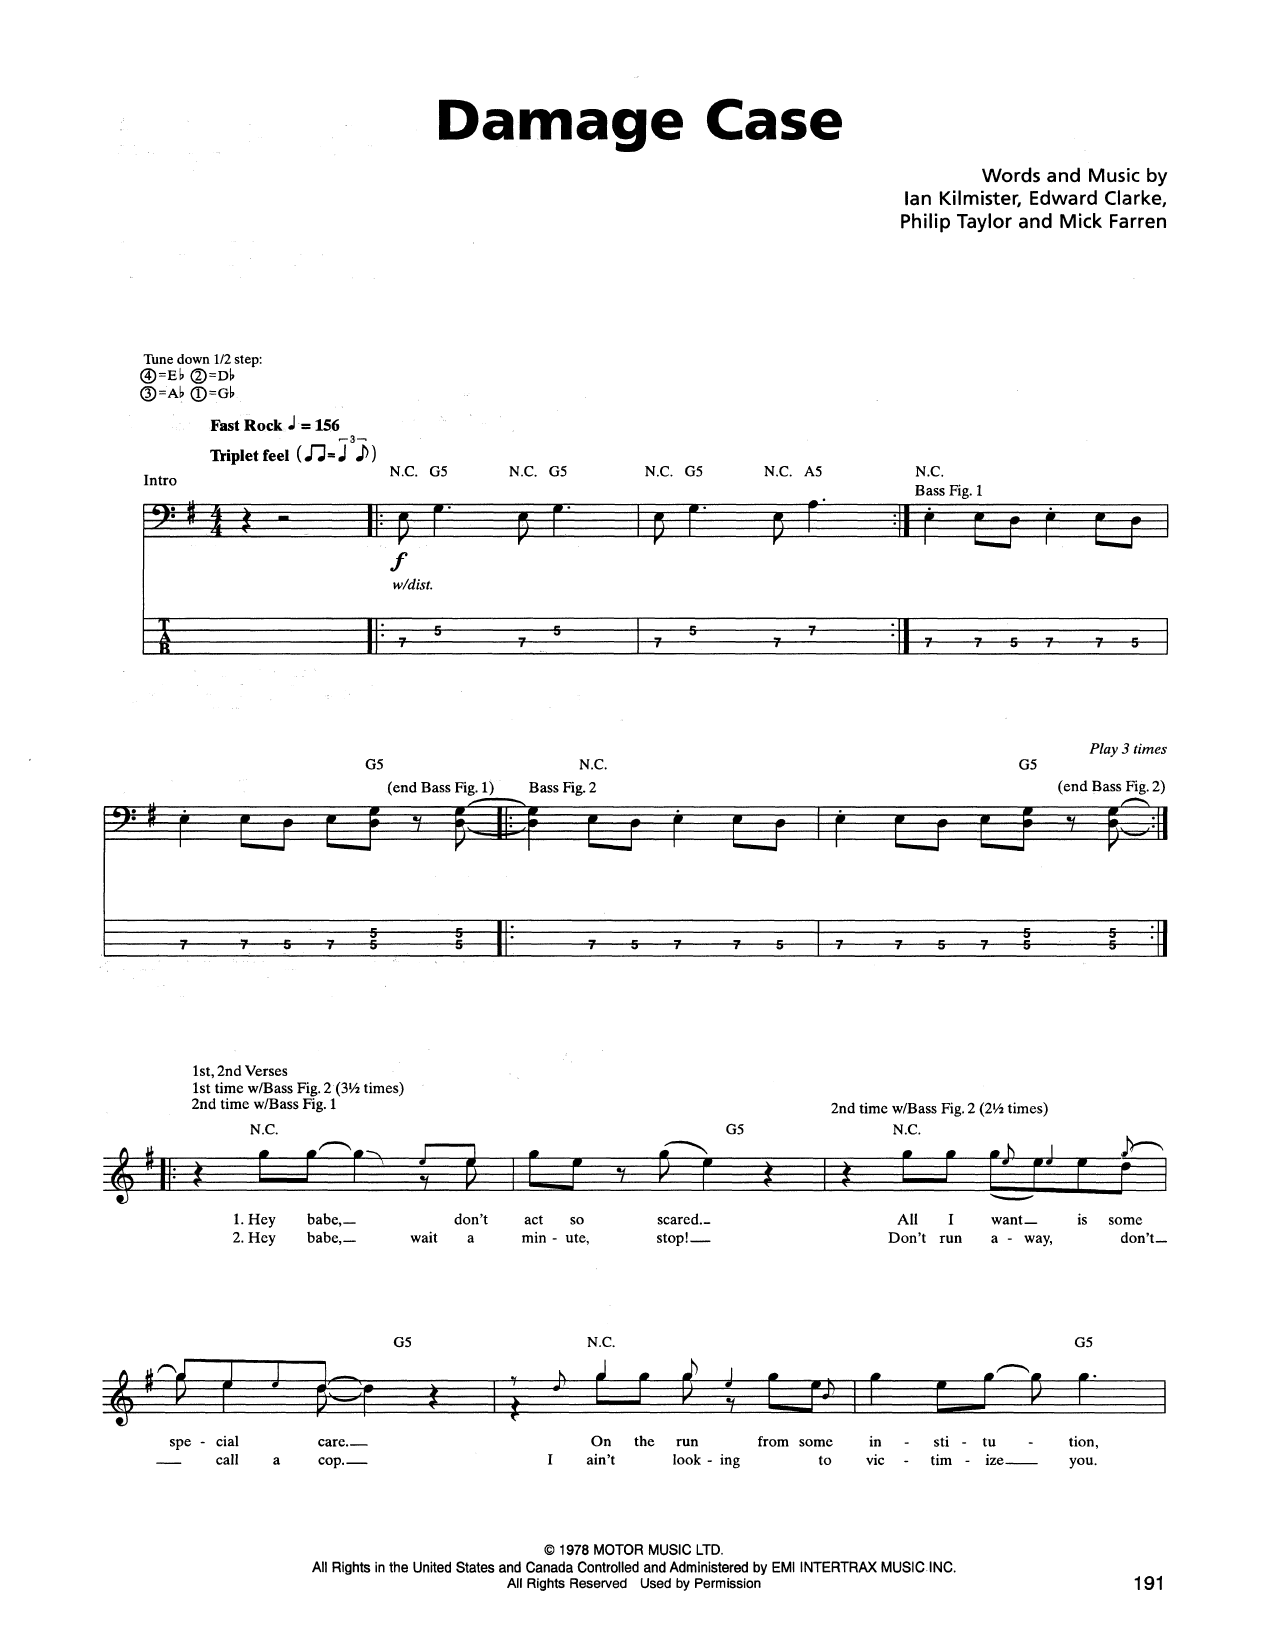 Metallica Damage Case Sheet Music Notes & Chords for Lyrics & Chords - Download or Print PDF